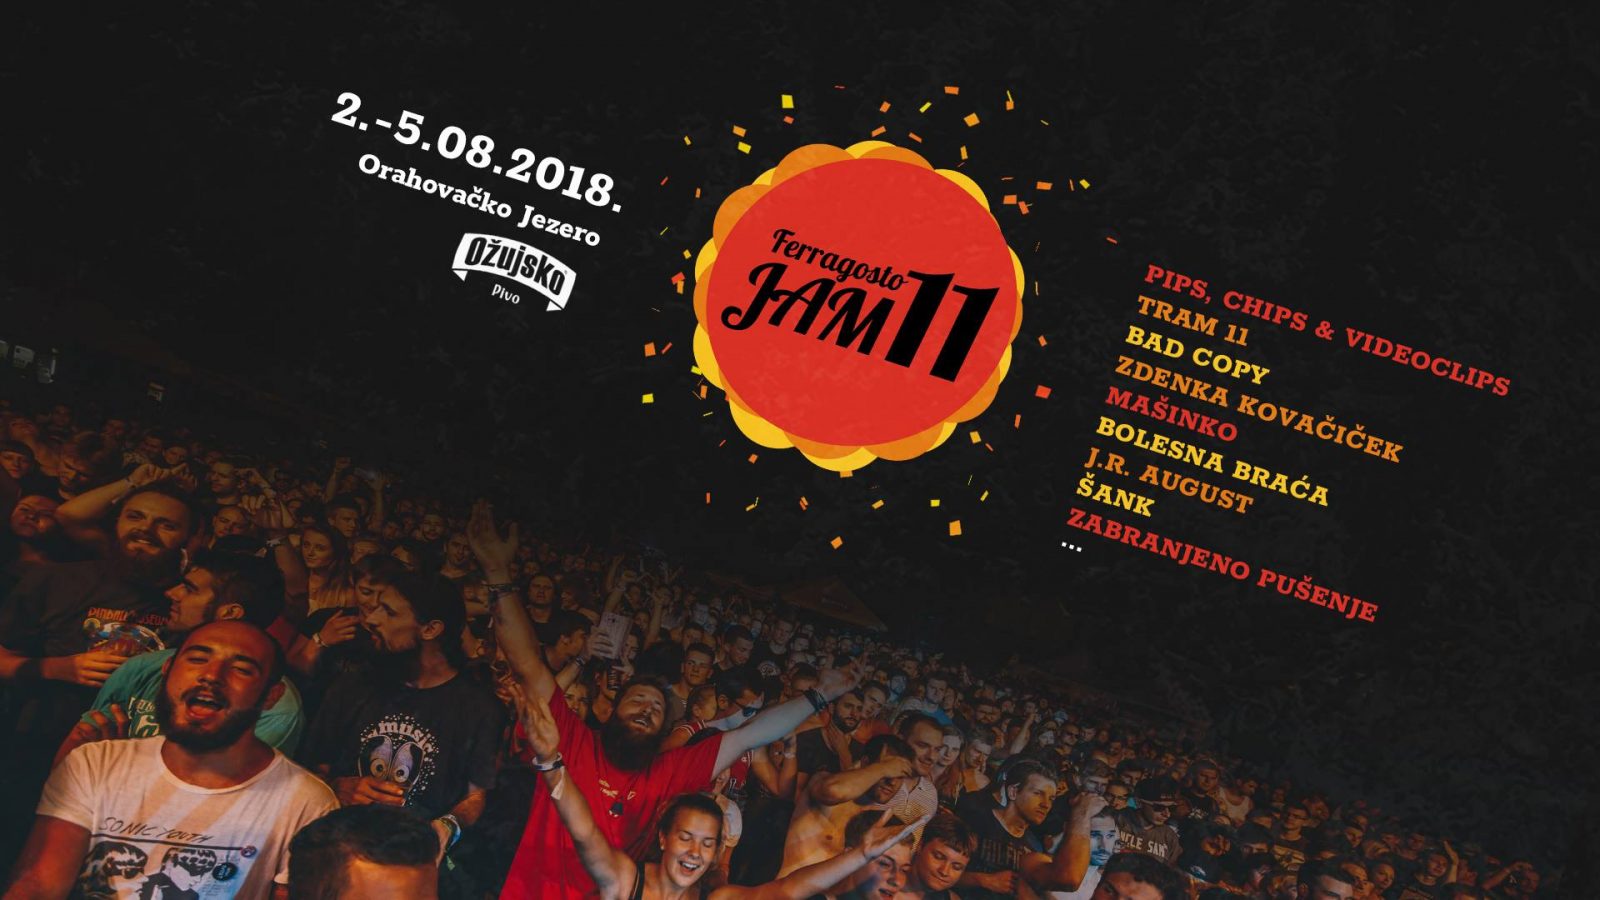 Ferragosto-Jam-Festival-Croatia-Music-Festivals-2018